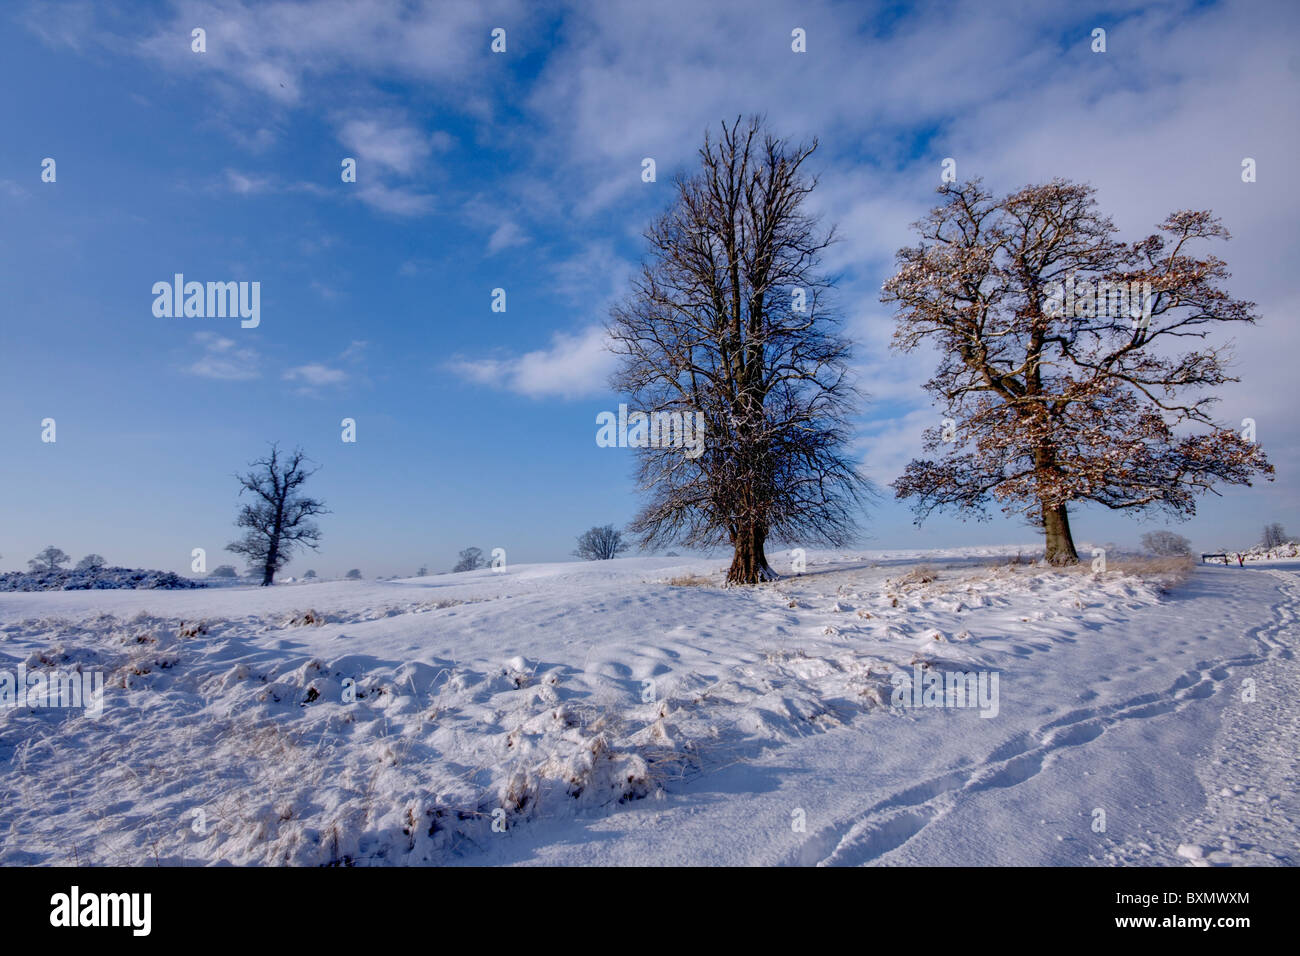 Pocos árboles congelados capta de una pequeña colina Foto de stock